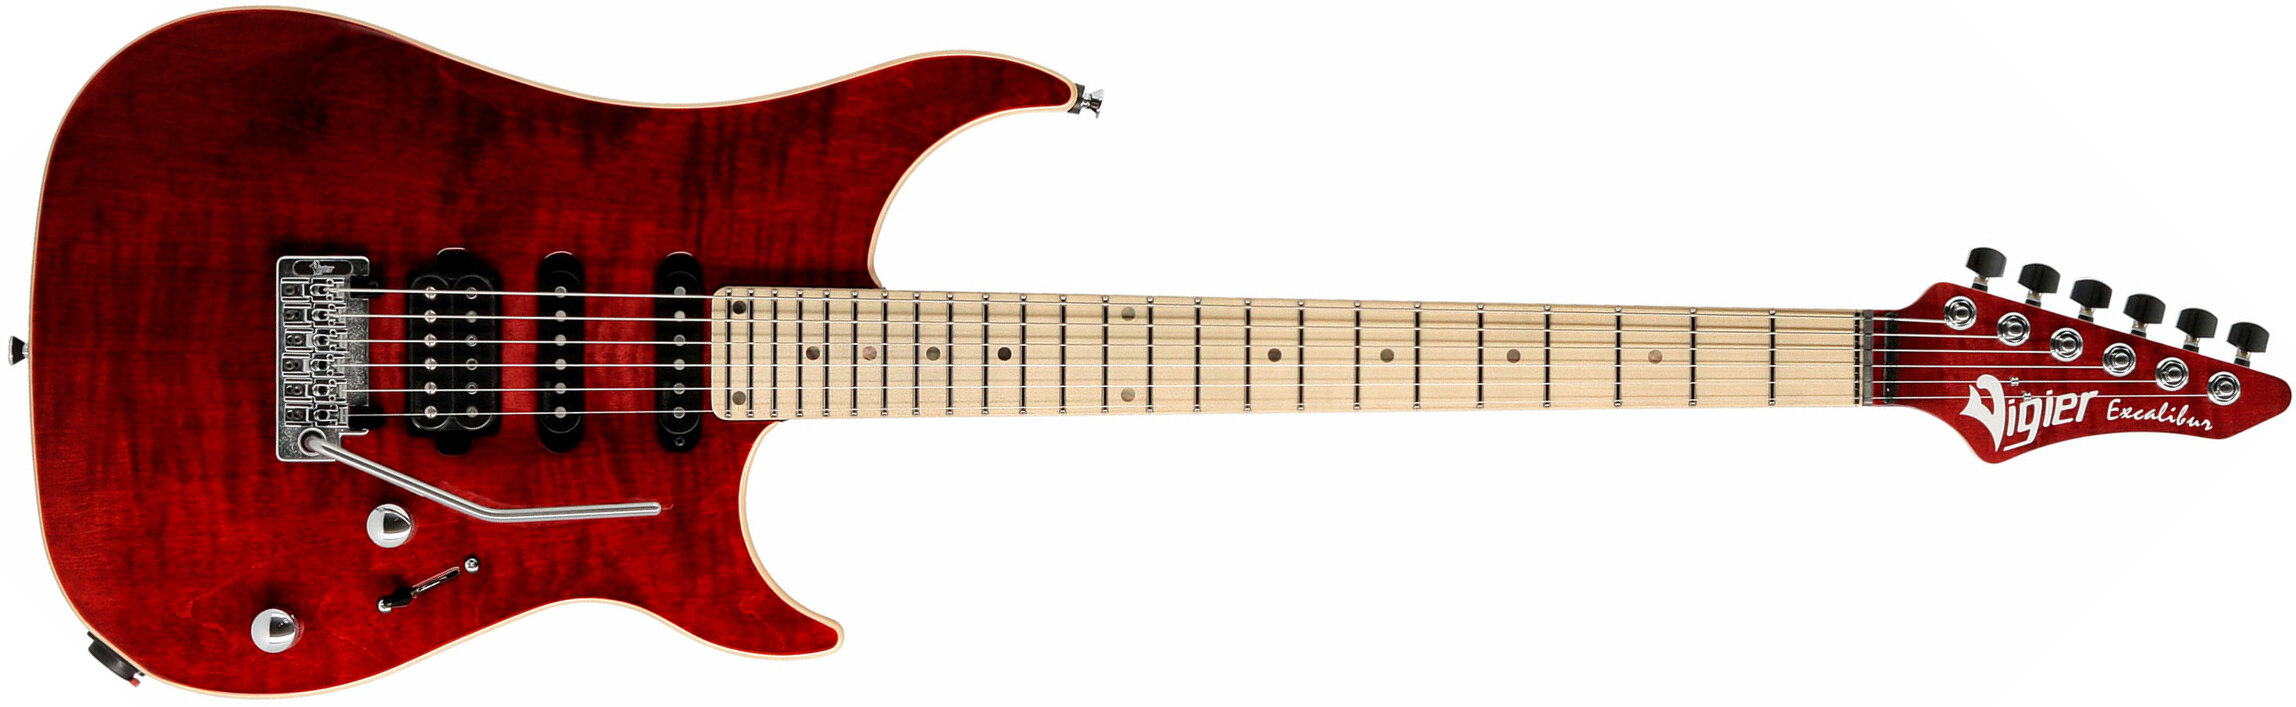 Vigier Excalibur Ultra Blues Hss Trem Mn - Ruby - Str shape electric guitar - Main picture